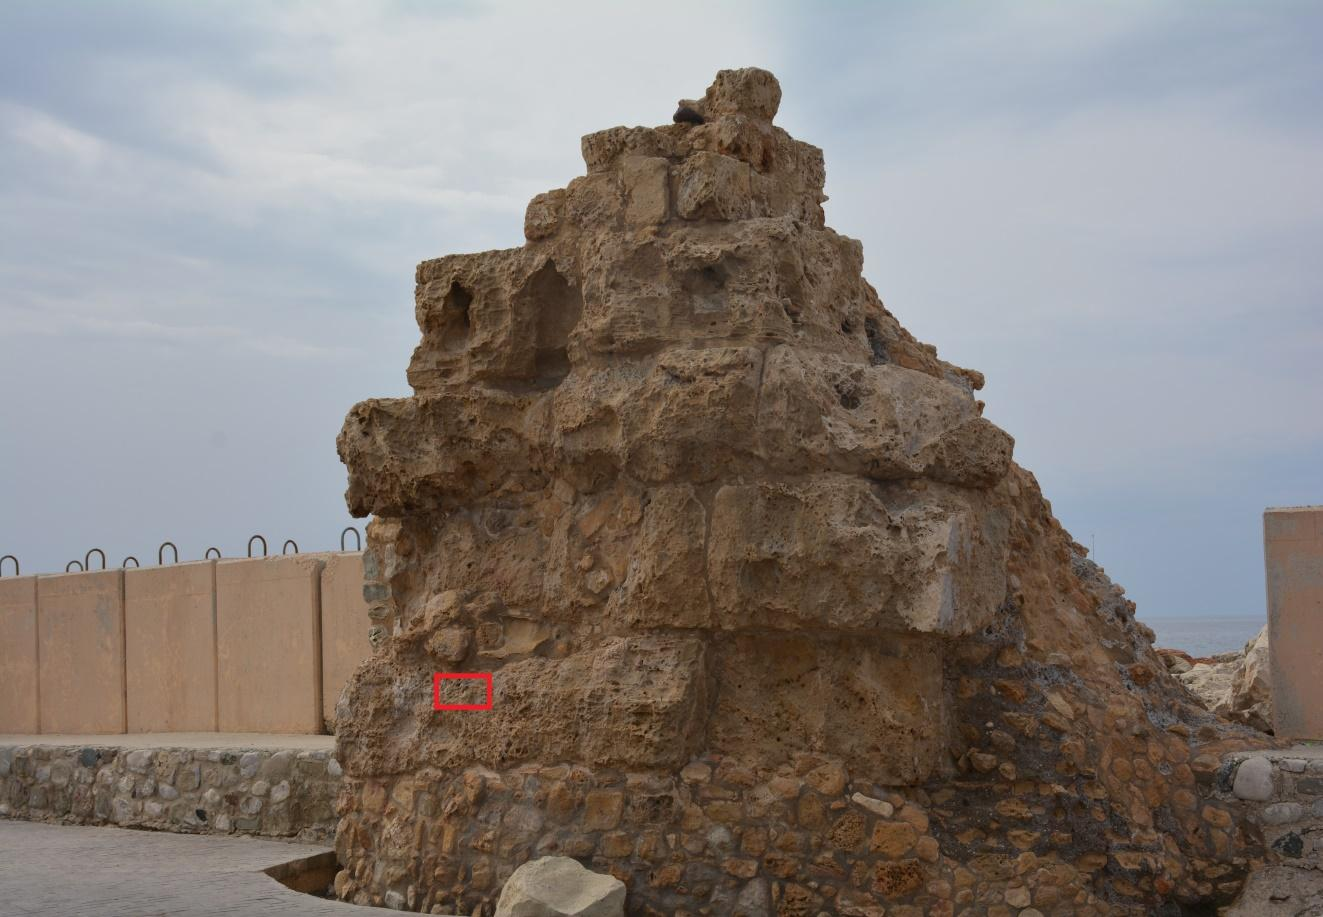 Περιγραφή δείγματος: Δείγμα από ερείπια Ανατολικού πύργου με σκοπό τον προσδιορισμό του τύπου του πετρώματος και ταύτιση πετρώματος με δομικούς λίθους του Δυτικού πύργου (Κάστρο Πάφου). Εικ. 4.1.